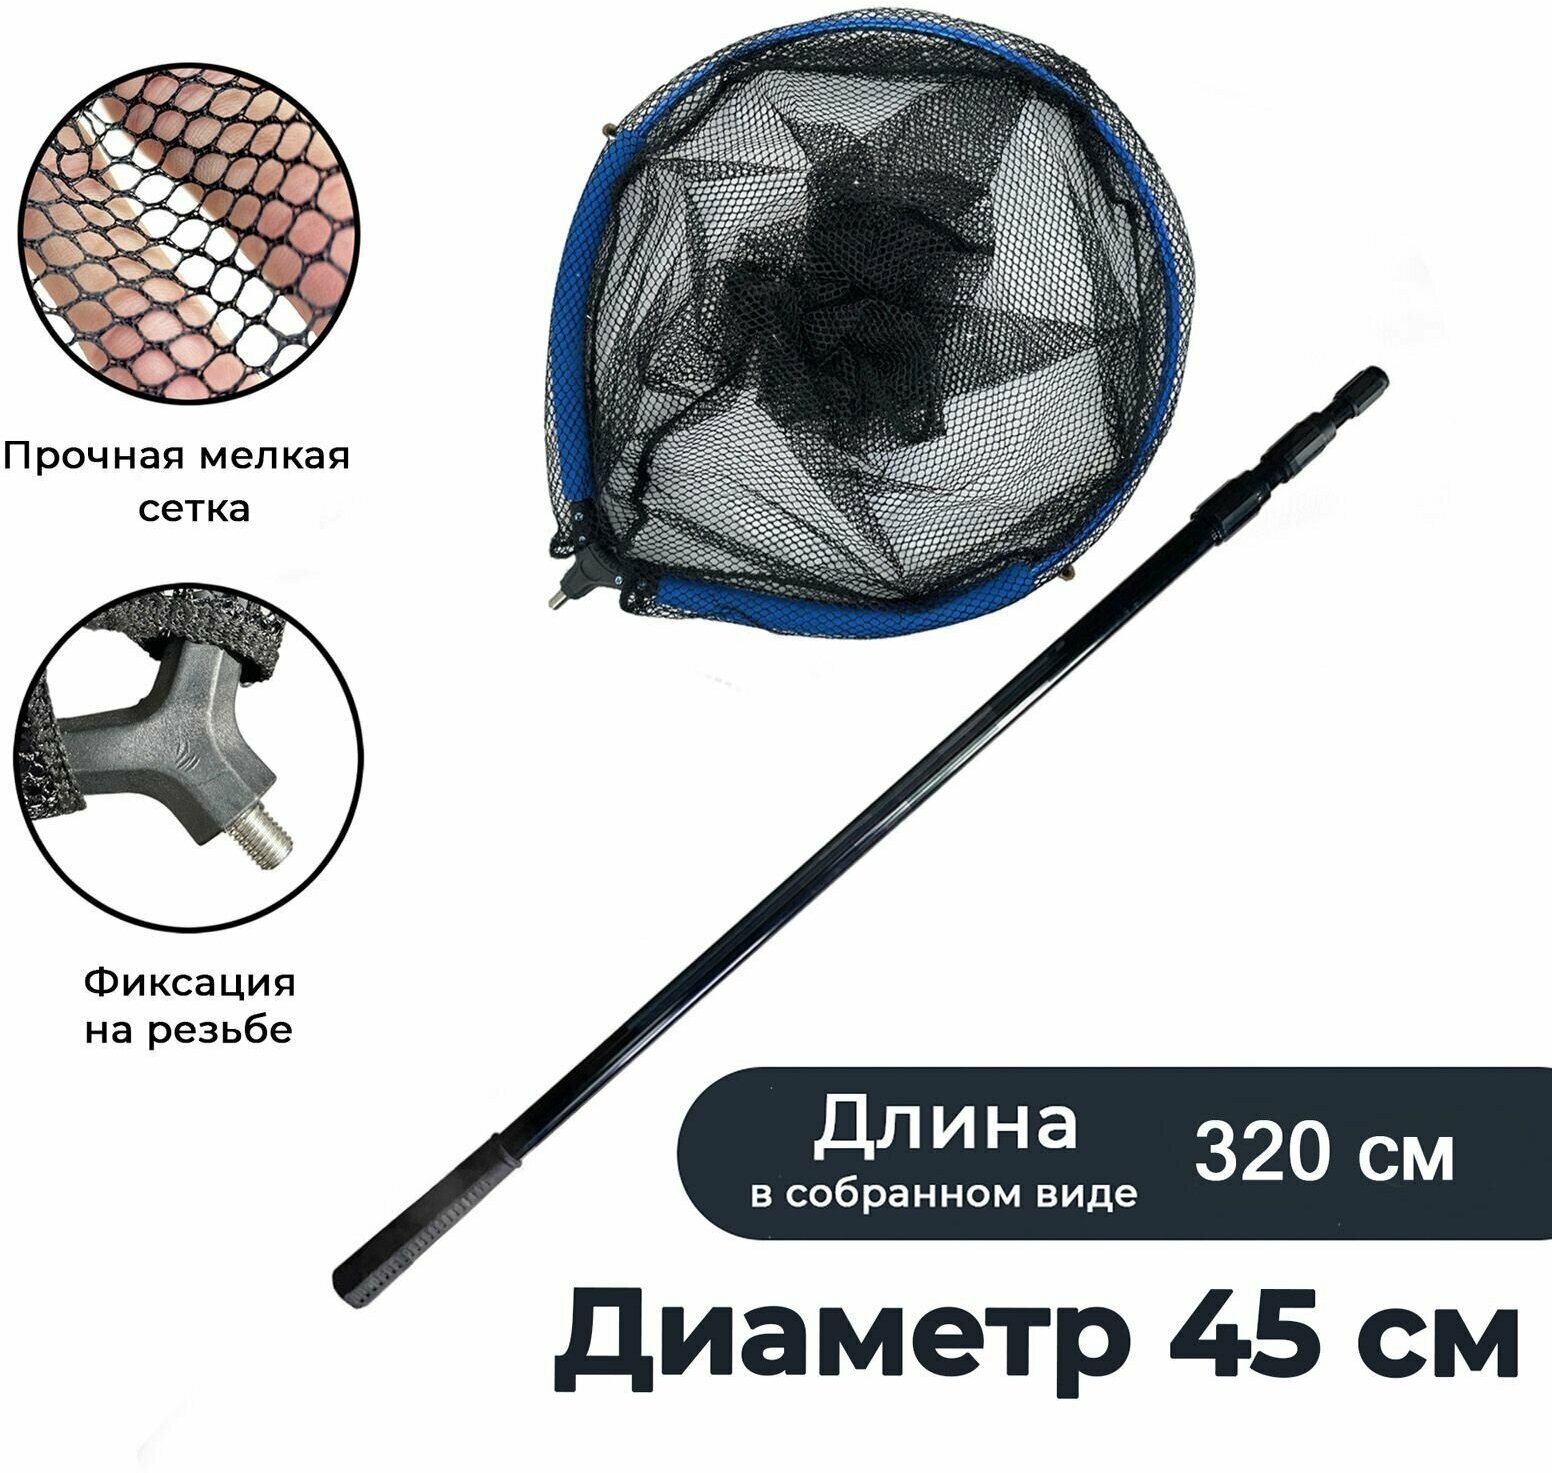 Подсачек плавающий рыболовный 45 ручка алюминий до 32 м